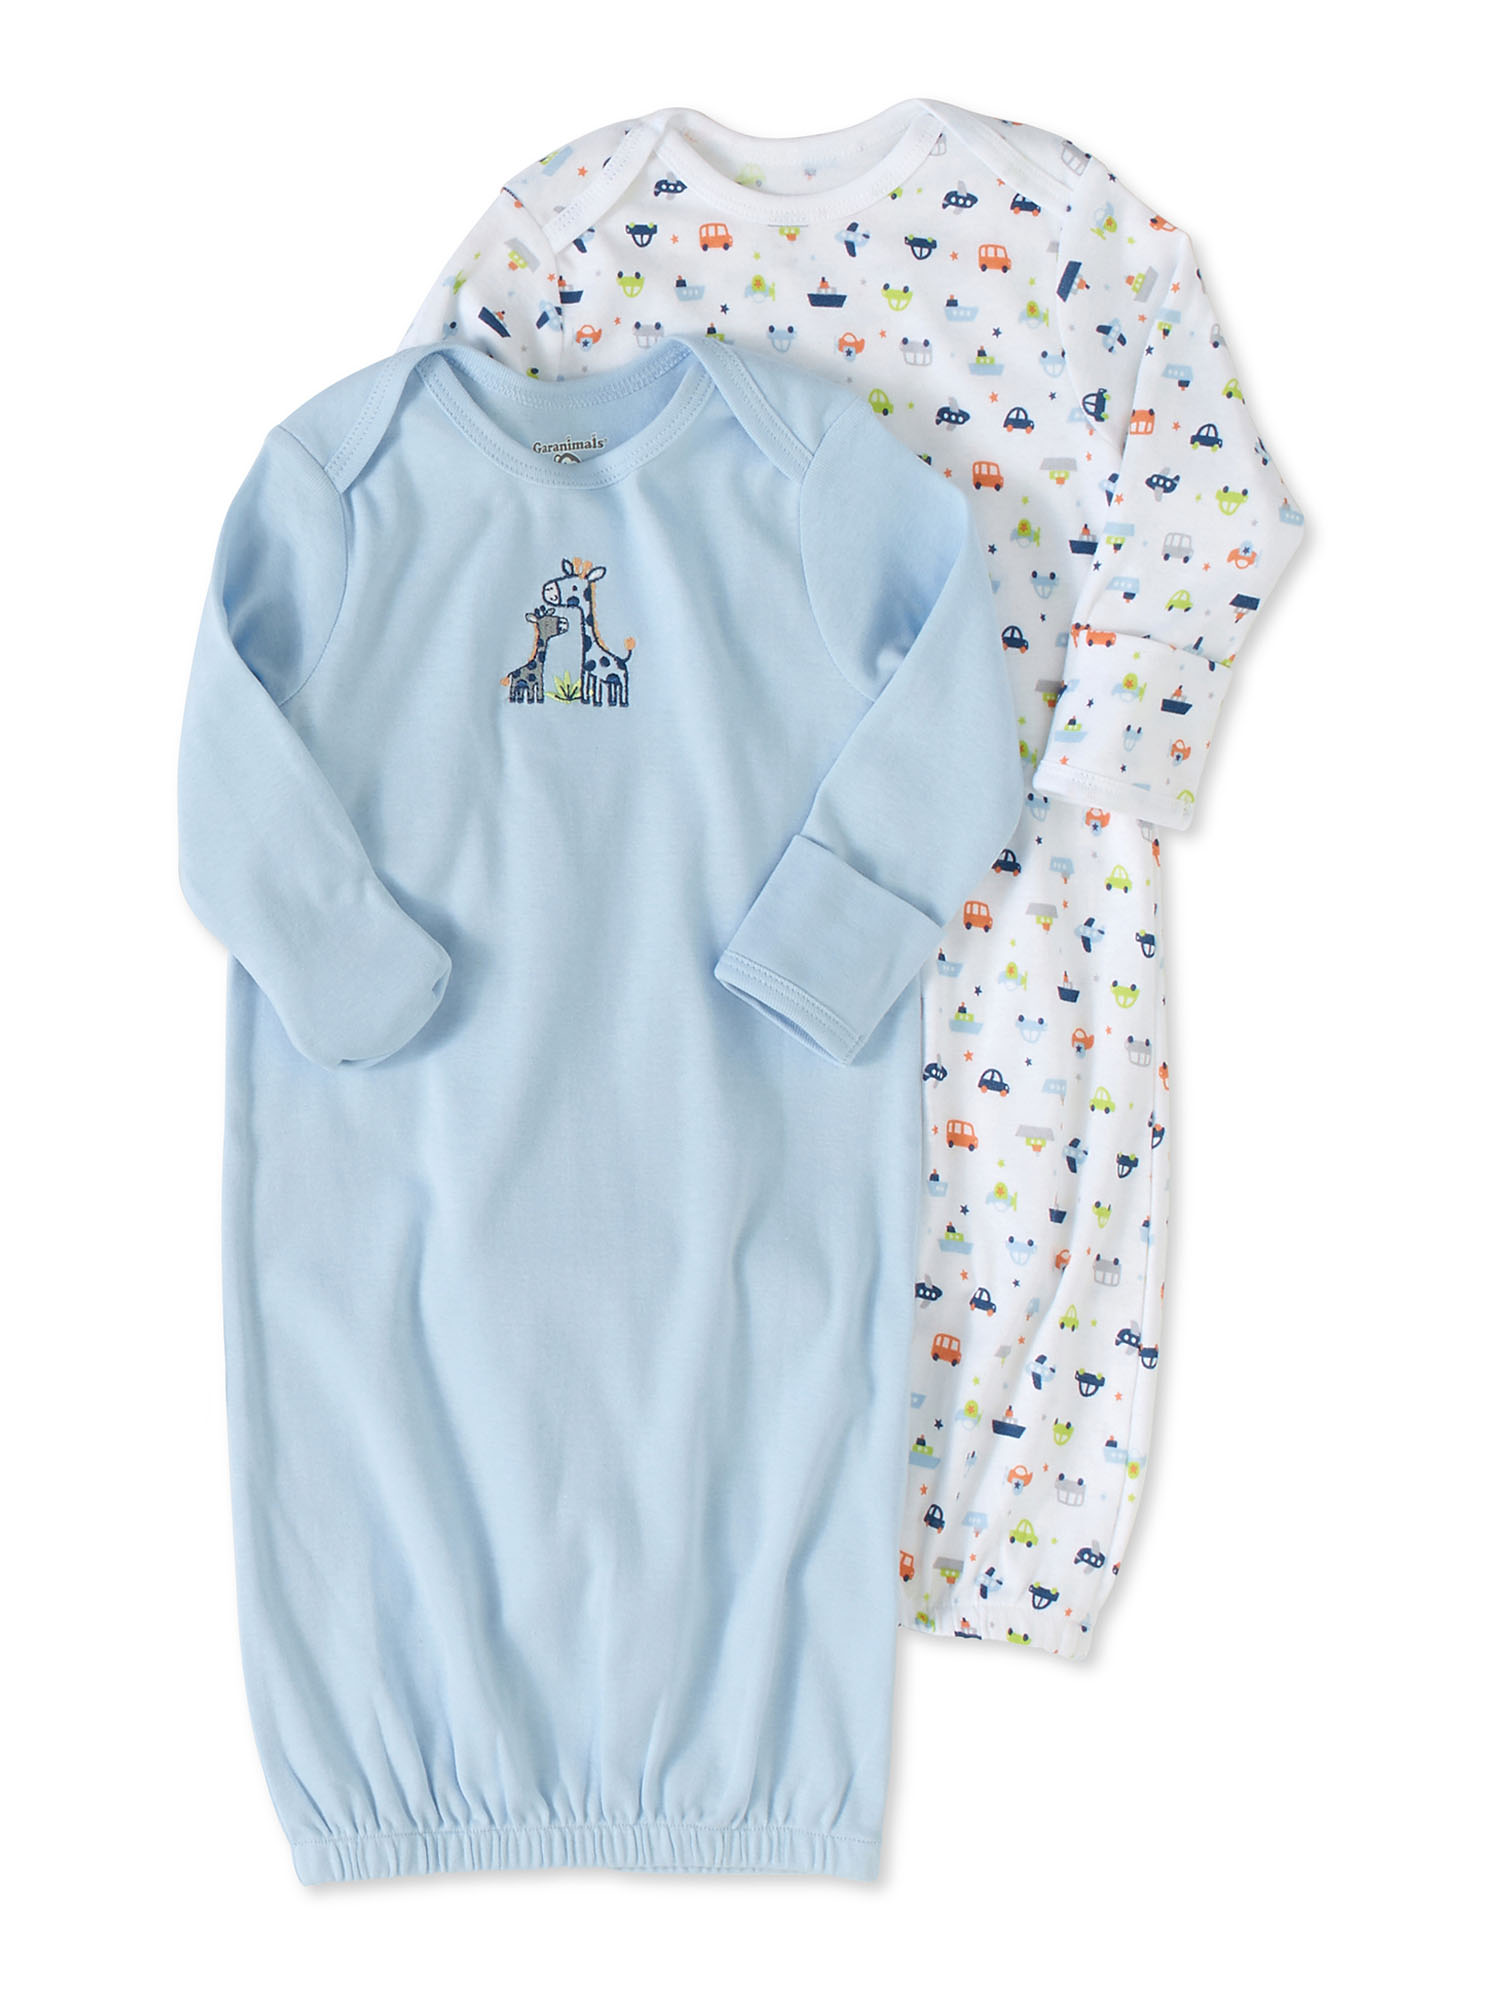 Garanimals Newborn Baby Boy Shower Gift Set, 20-Piece, Preemie-6/9 Months - image 3 of 7